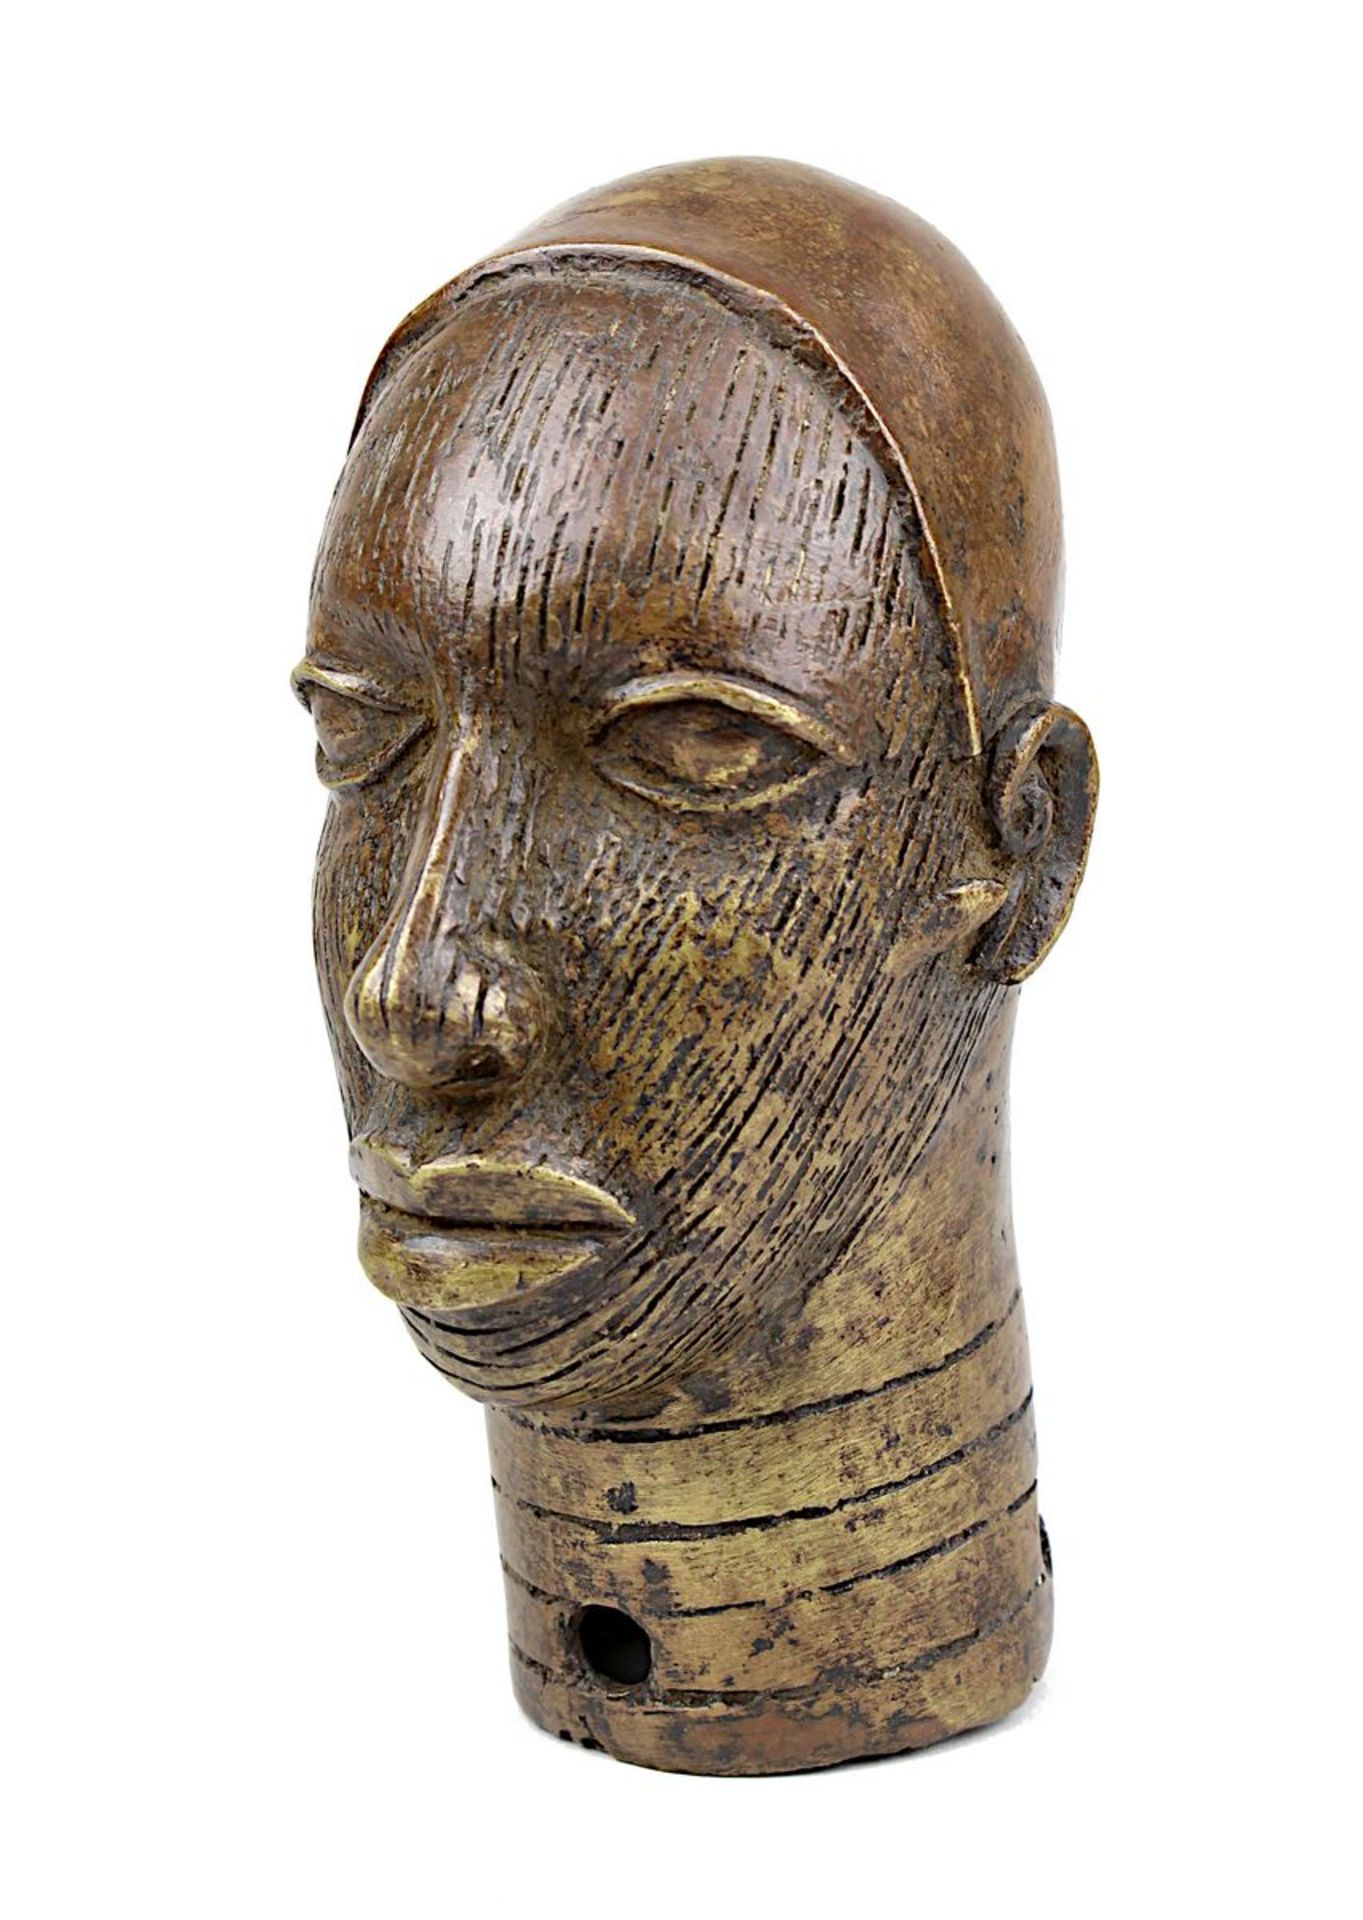 Kopf aus Bronze, Ife, Nigeria, schmales Gesicht mit parallelen vertikalen Linien dekoriert, glatte